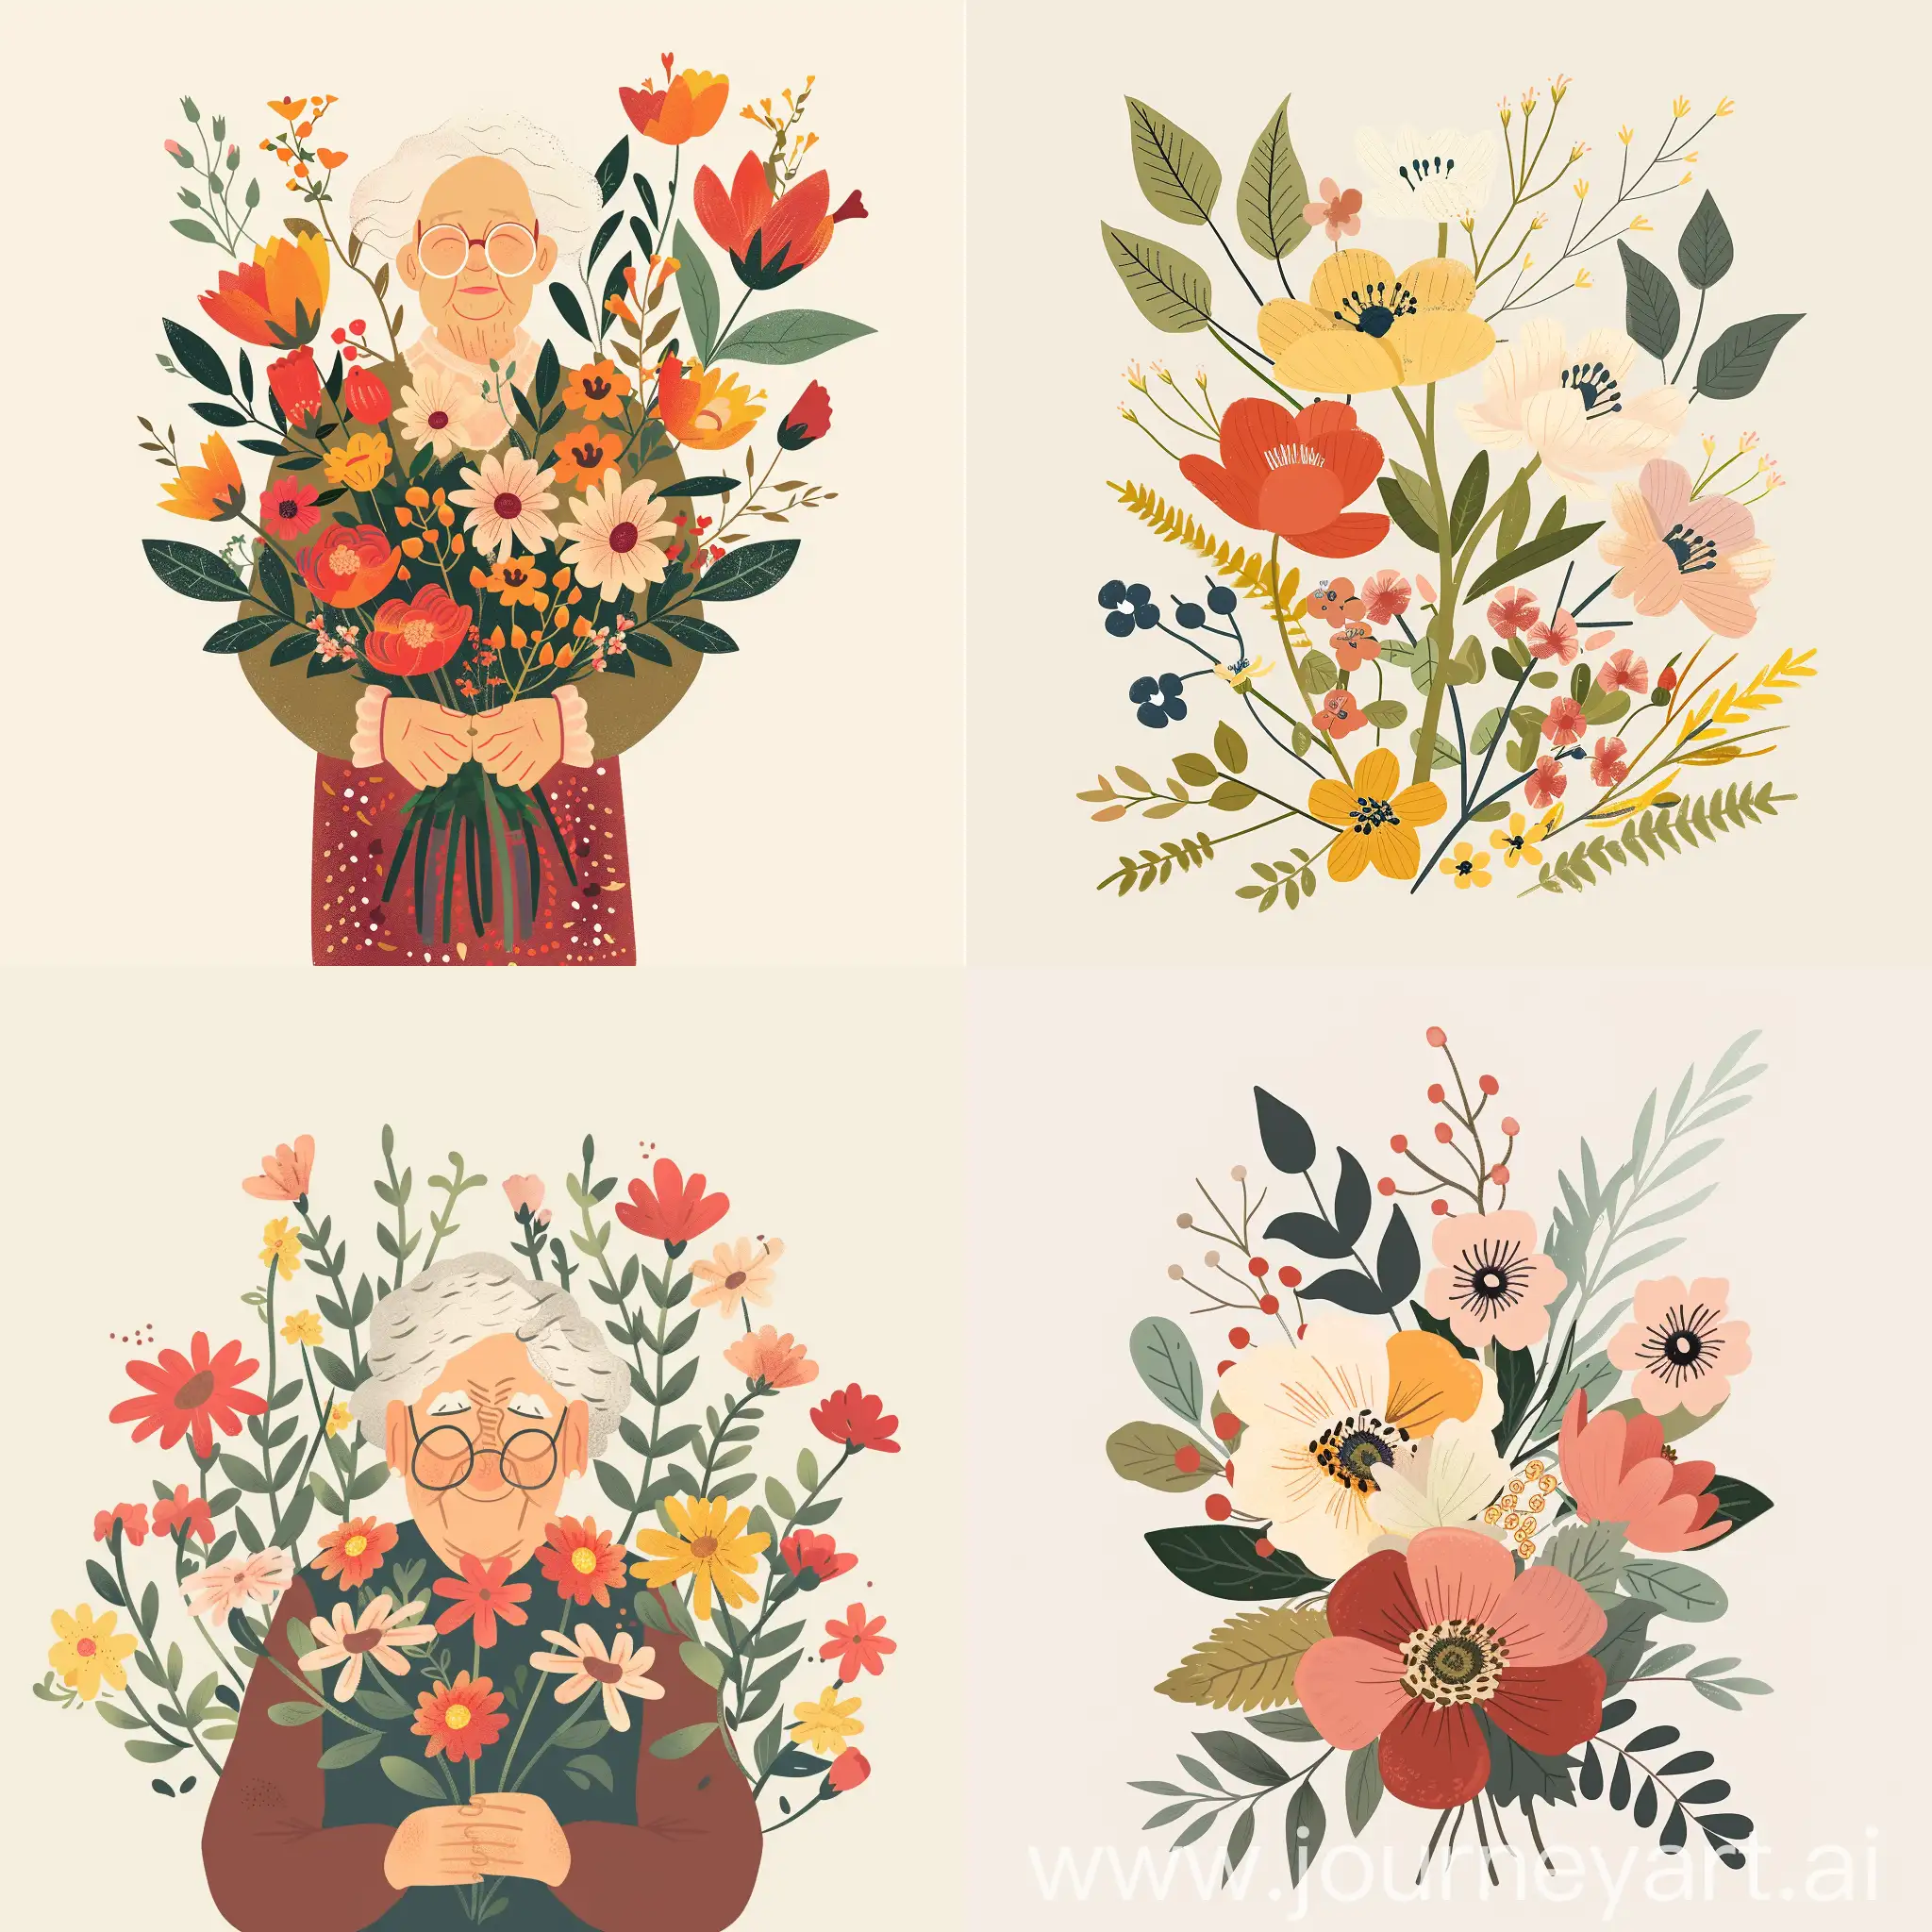 Maak een rouwkaart voor een oma die heel erg van bloemen houd. er mag veel kleur in zitten, niet te saai, maar wel met een minimalistische touch. Ze is te vroeg overleden.